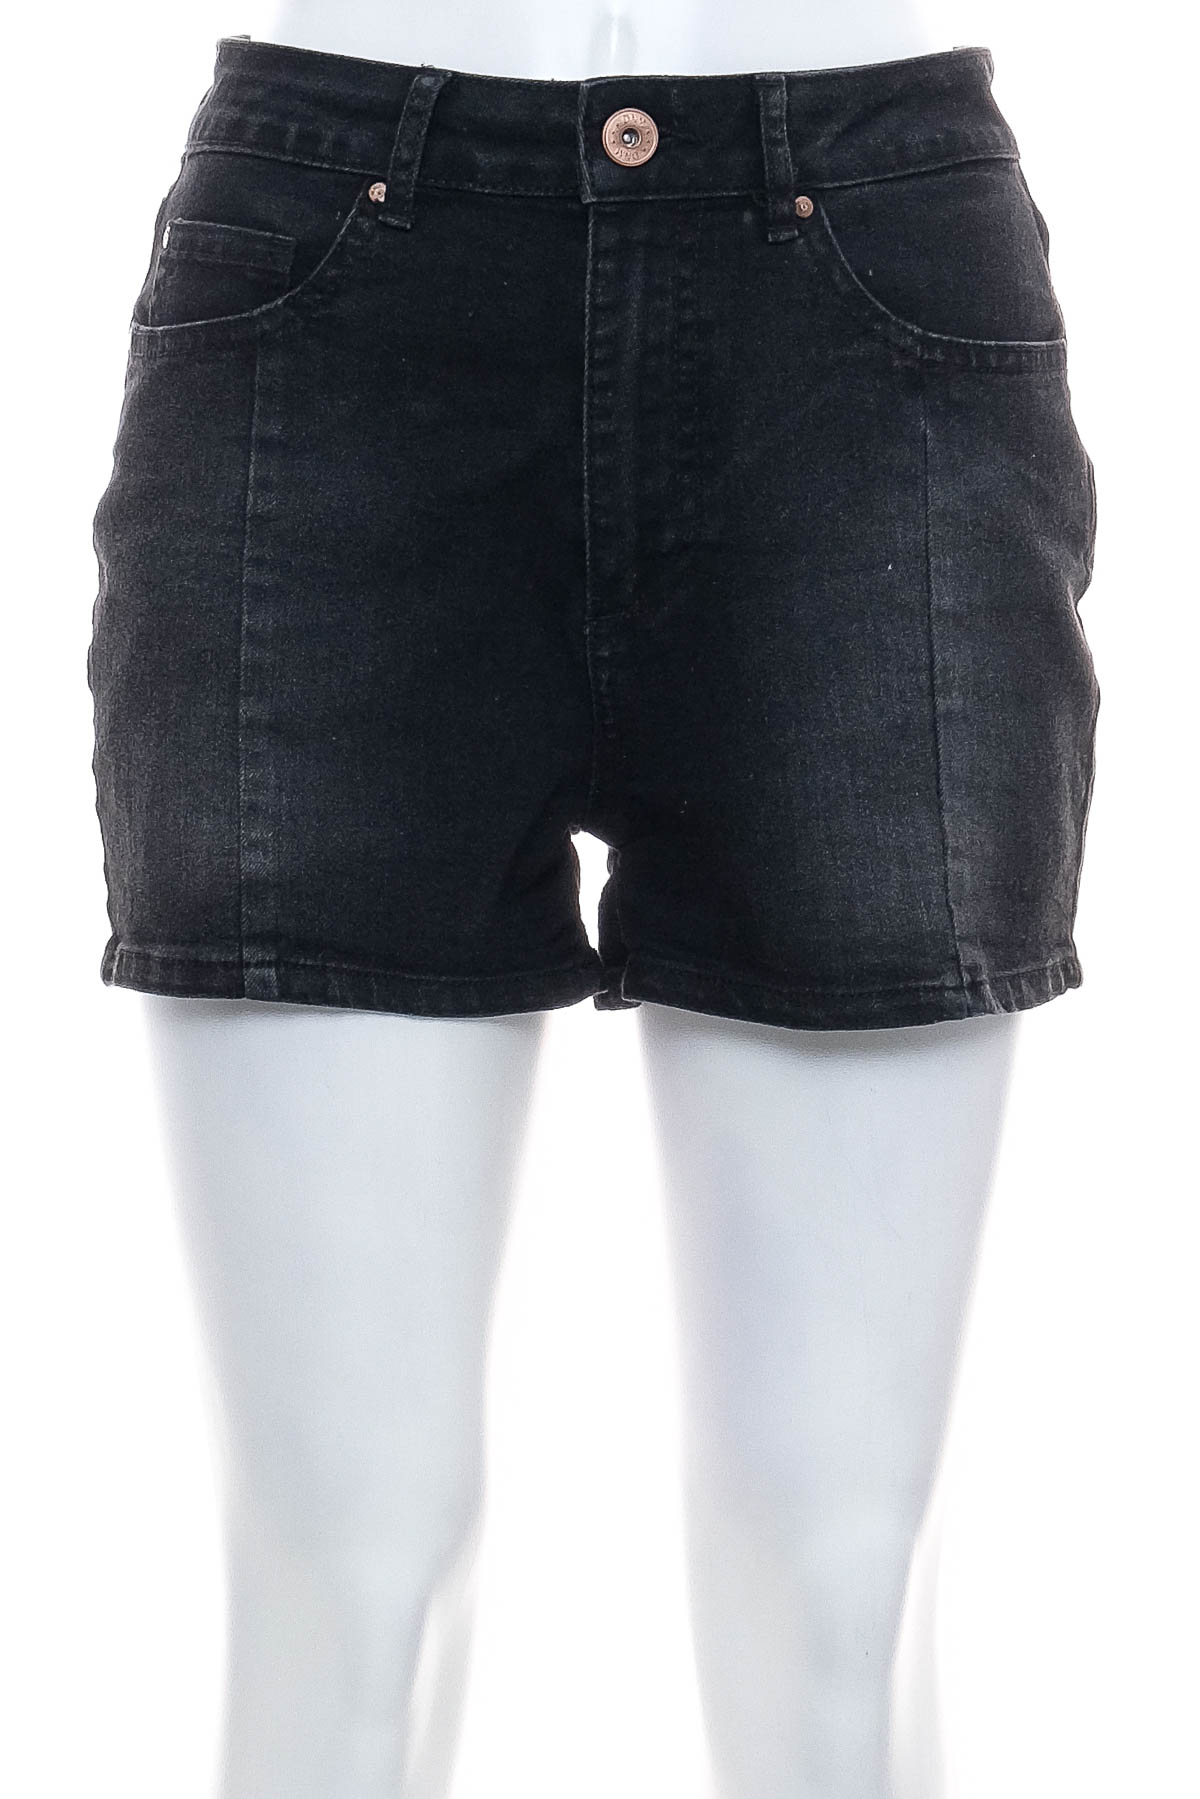 Γυναικείο κοντό παντελόνι - Esmara - 0